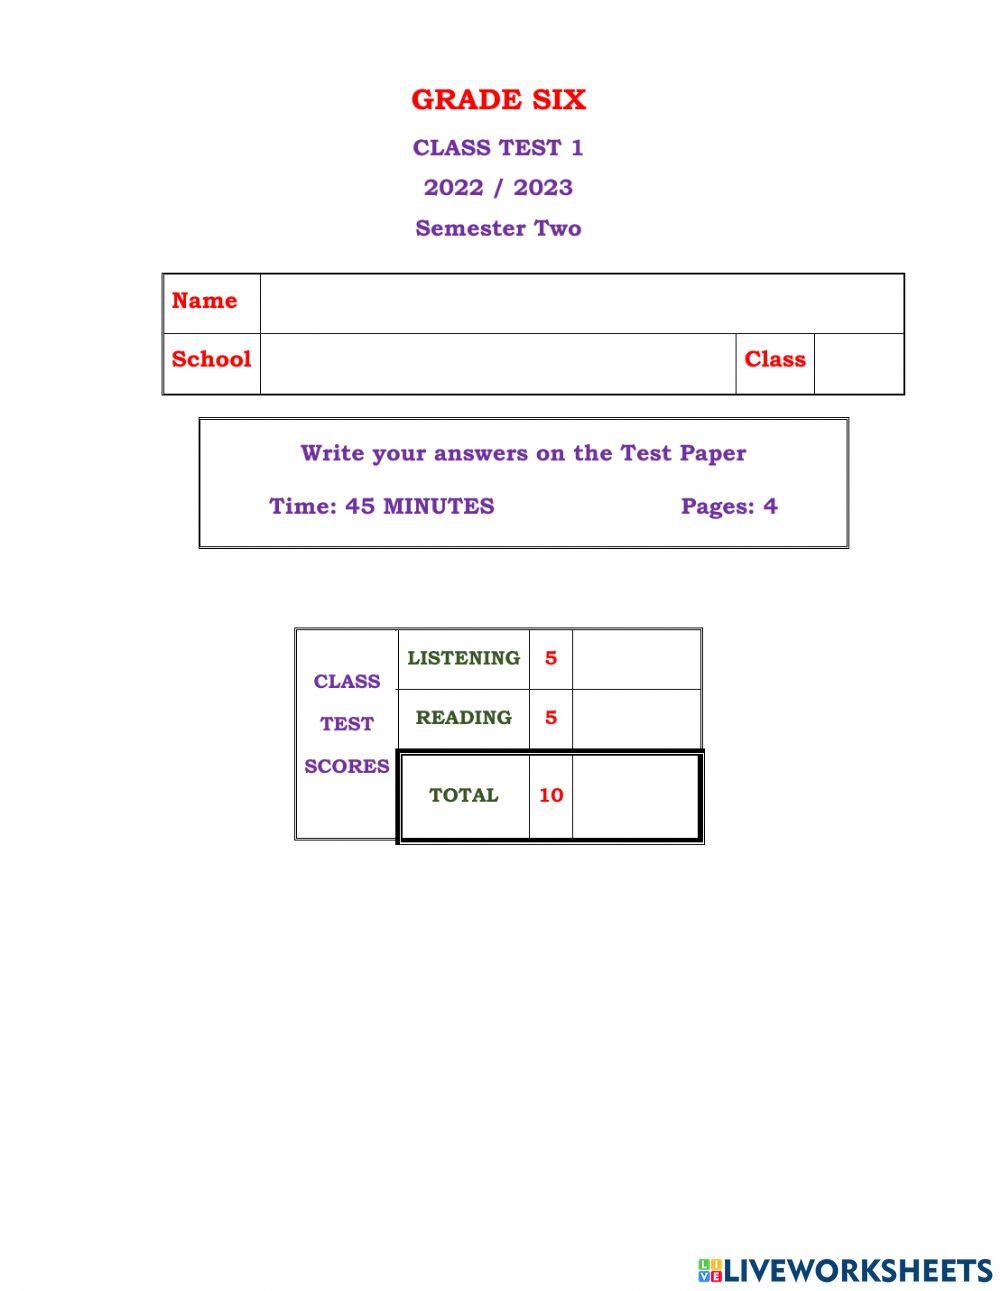 Grade 6 Class Test1 S 2